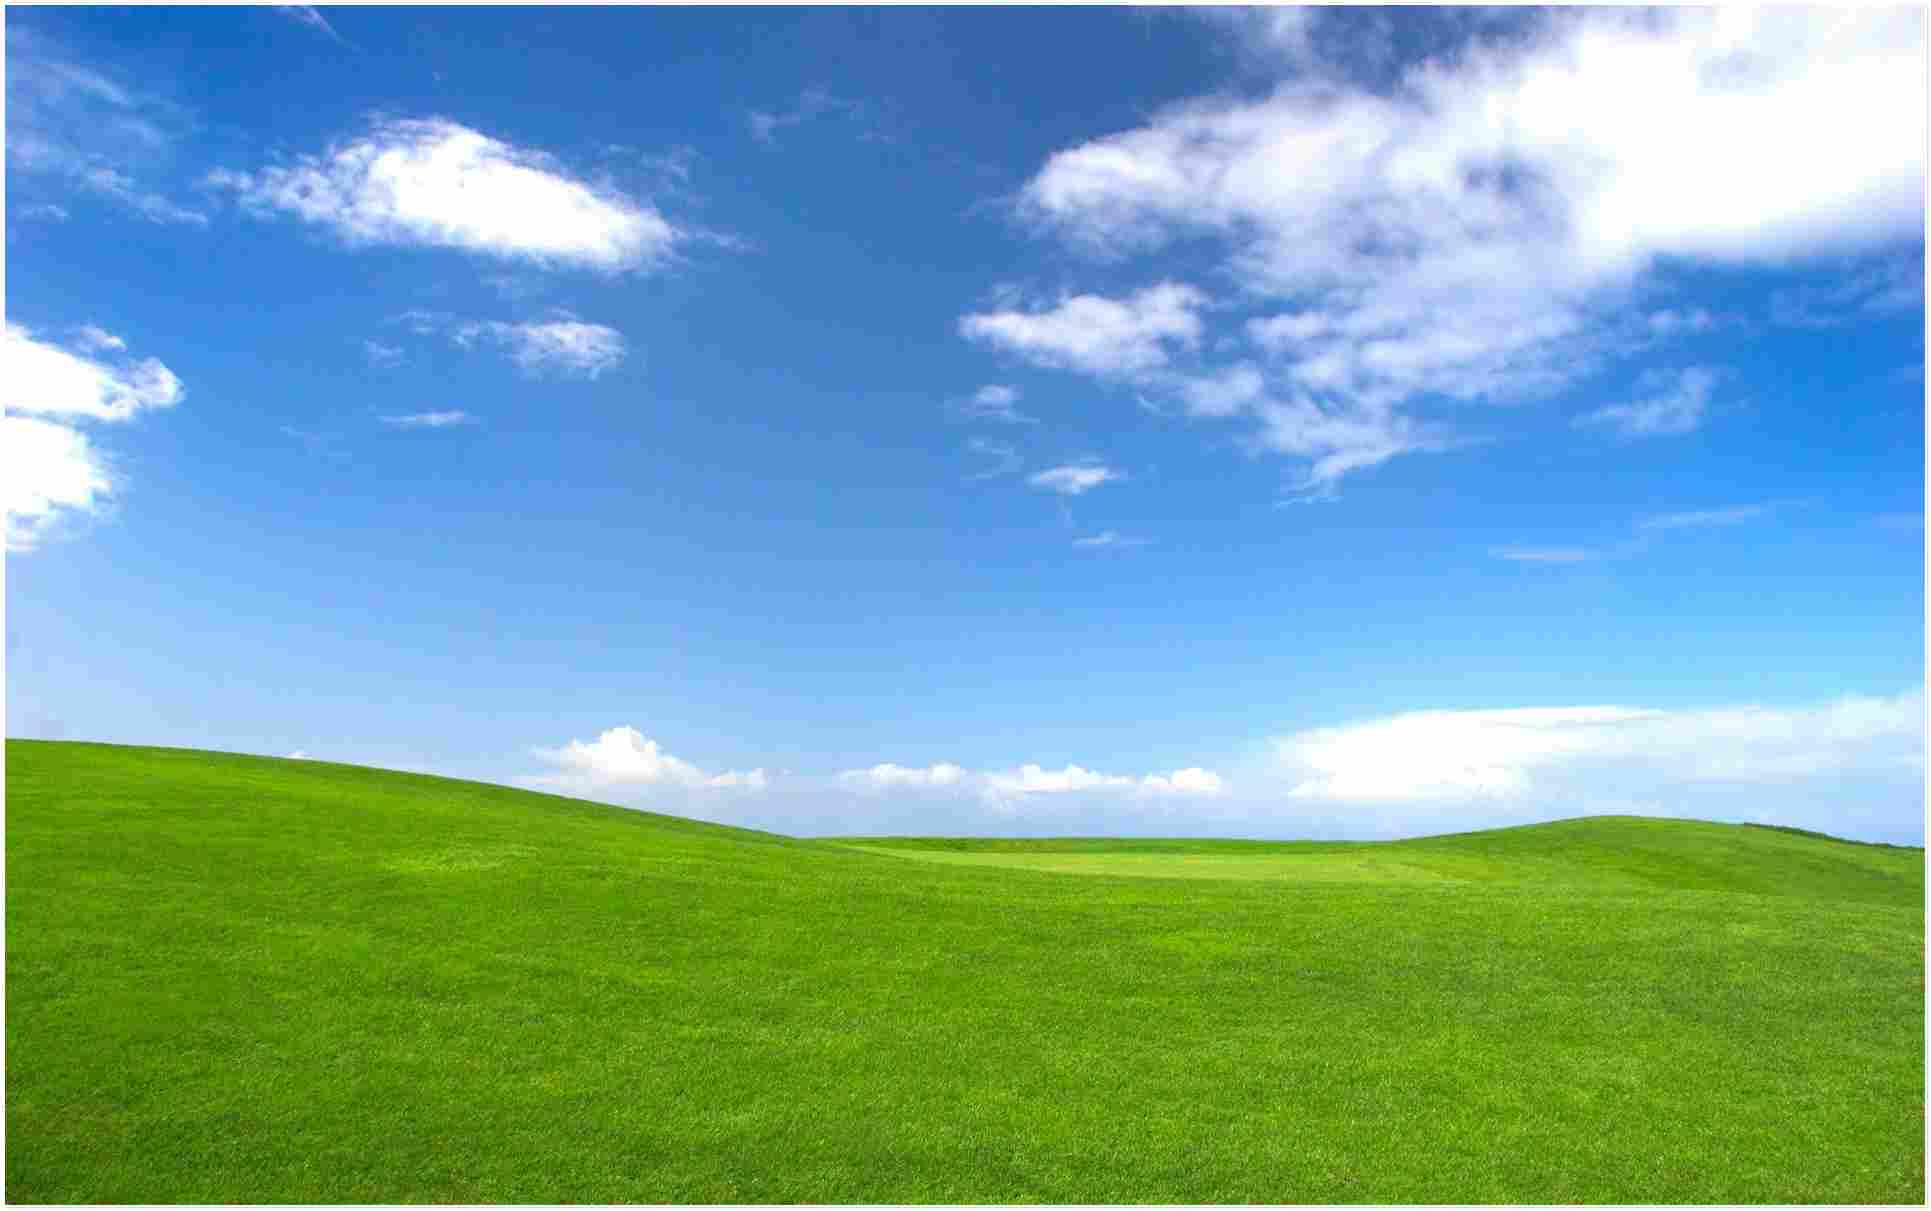 Hình nền Windows XP 2024: Tận hưởng cảm giác hoài cổ và đồng thời trải nghiệm công nghệ hiện đại với Hình nền Windows XP 2024! Với khả năng tùy chỉnh và dễ dàng sử dụng, bạn có thể tạo ra một giao diện máy tính độc đáo chỉ riêng mình mà không đụng hàng với ai. Tận dụng cơ hội thể hiện sự sáng tạo của mình và trải nghiệm cùng với Hình nền Windows XP 2024 ngay hôm nay!